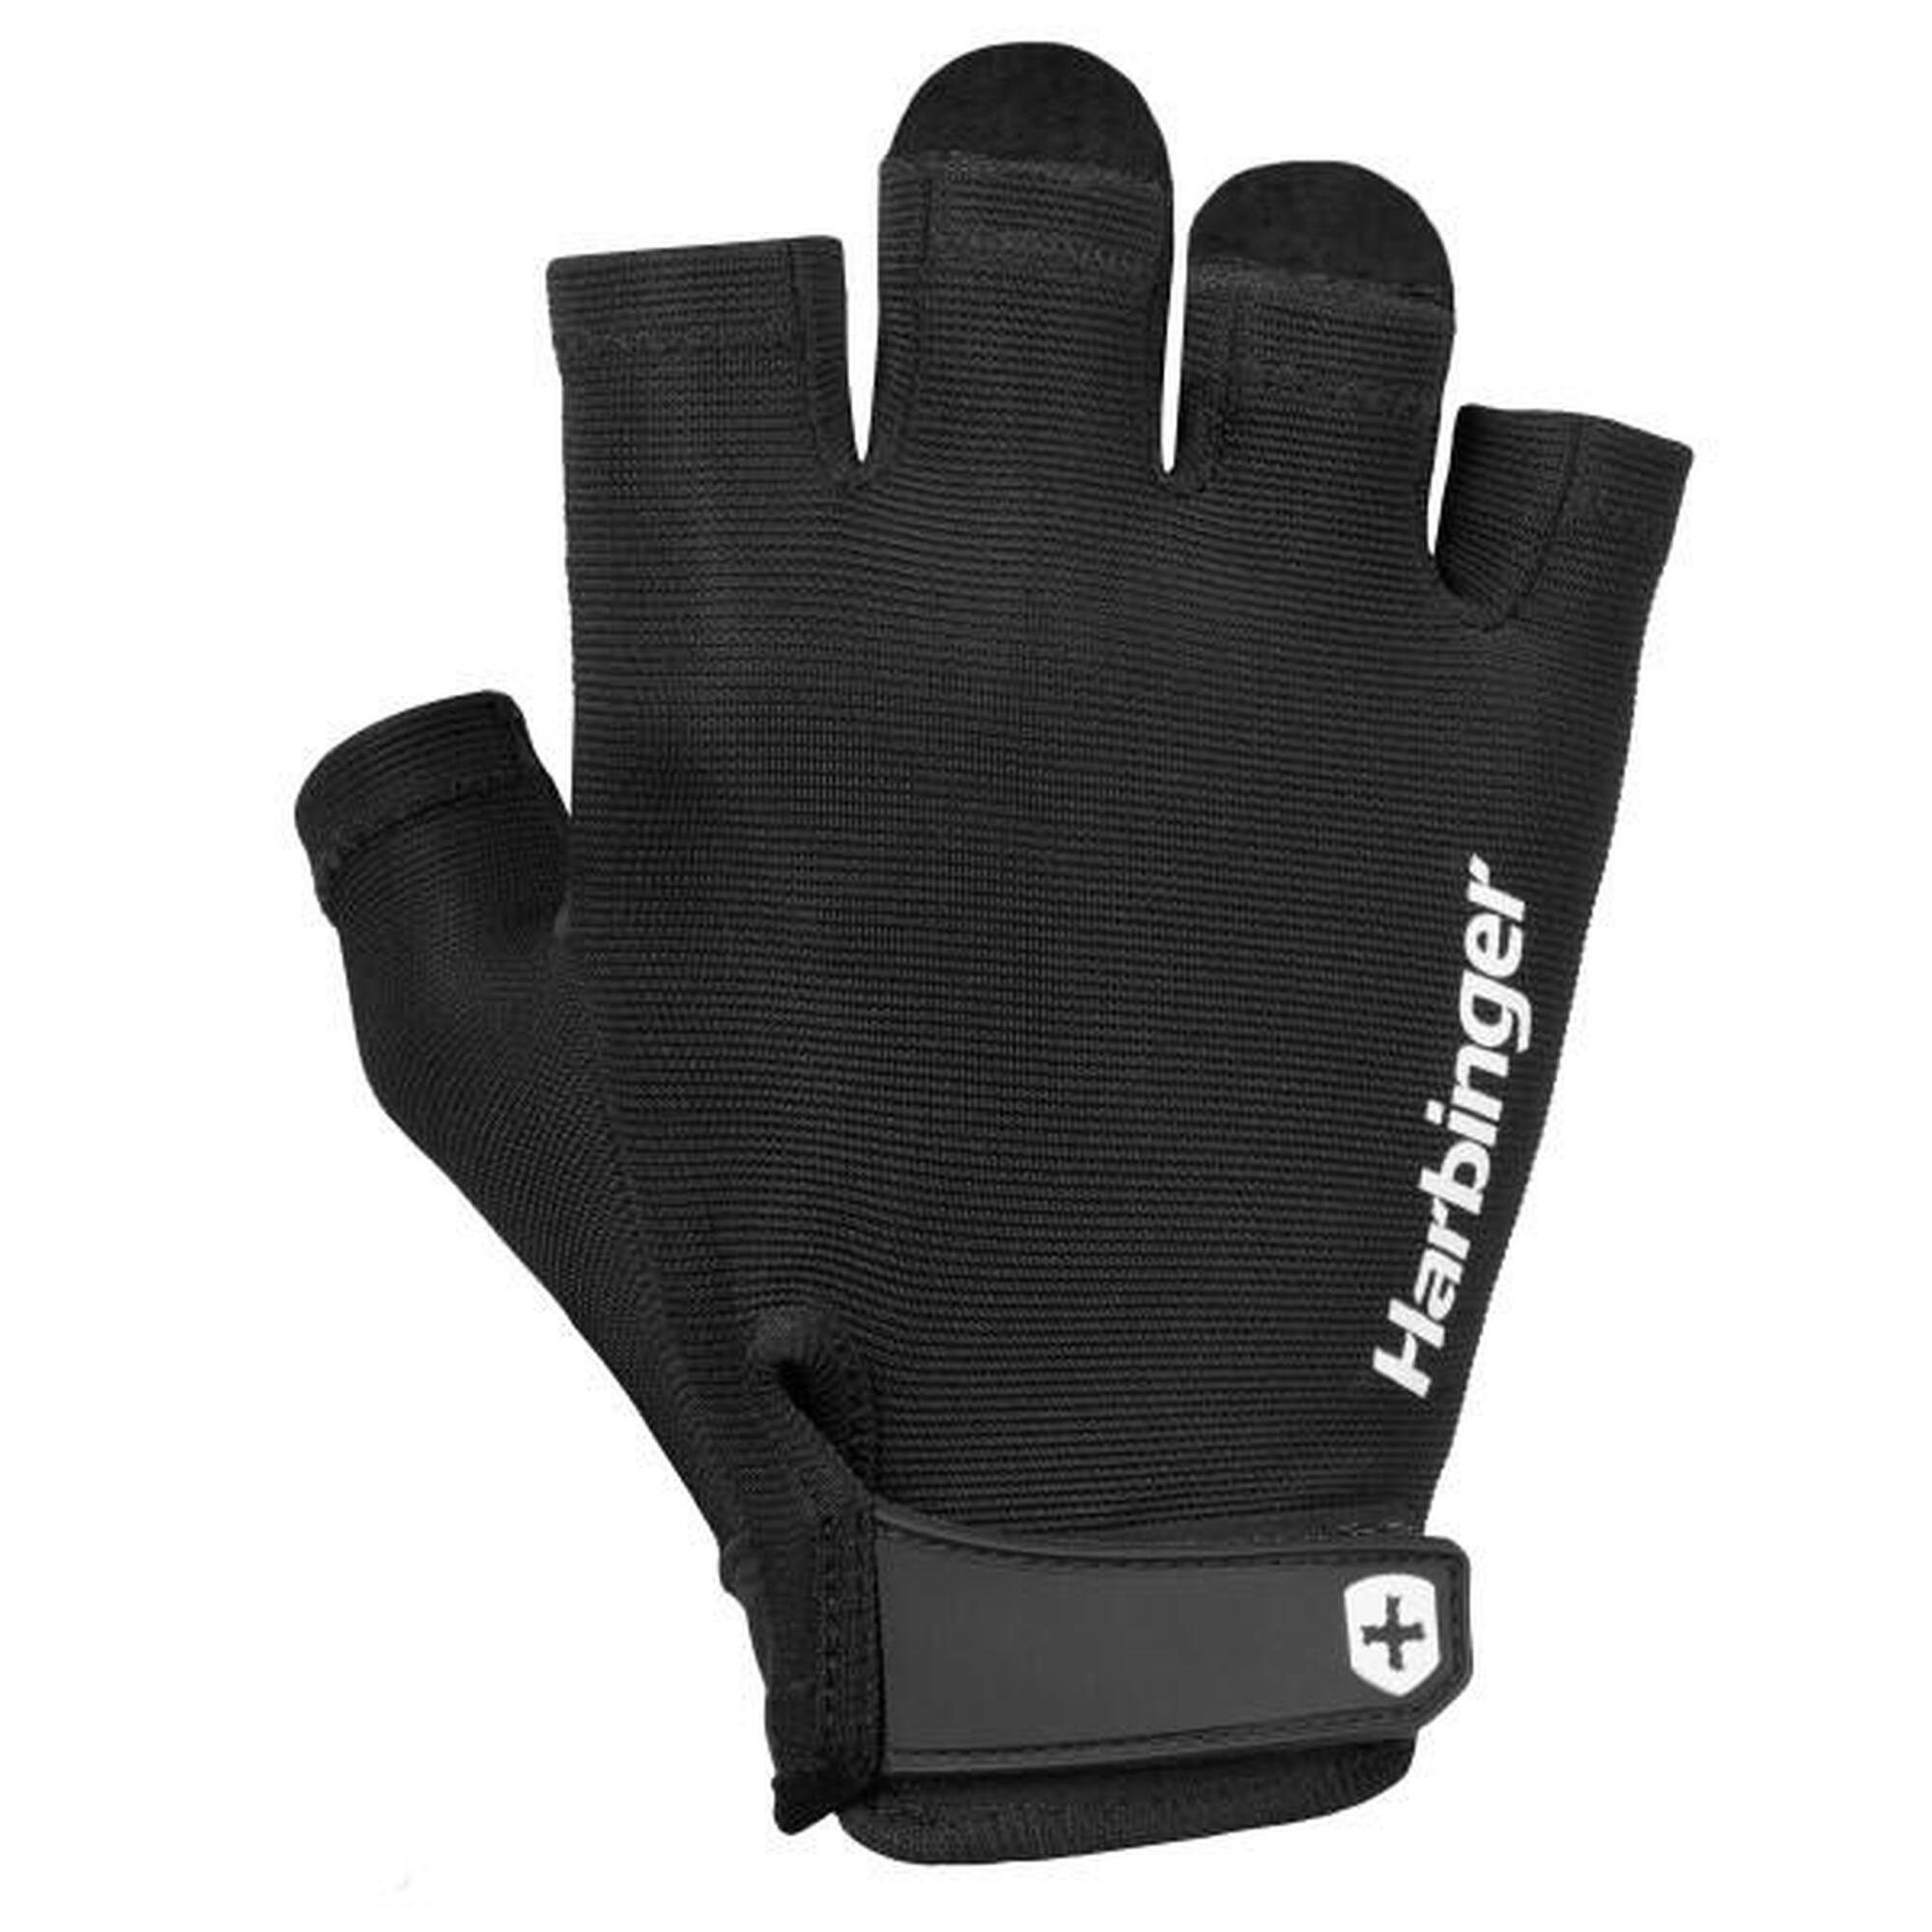 Harbinger Power Handschoenen: Stevige grip, optimaal comfort. Maat S - Zwart